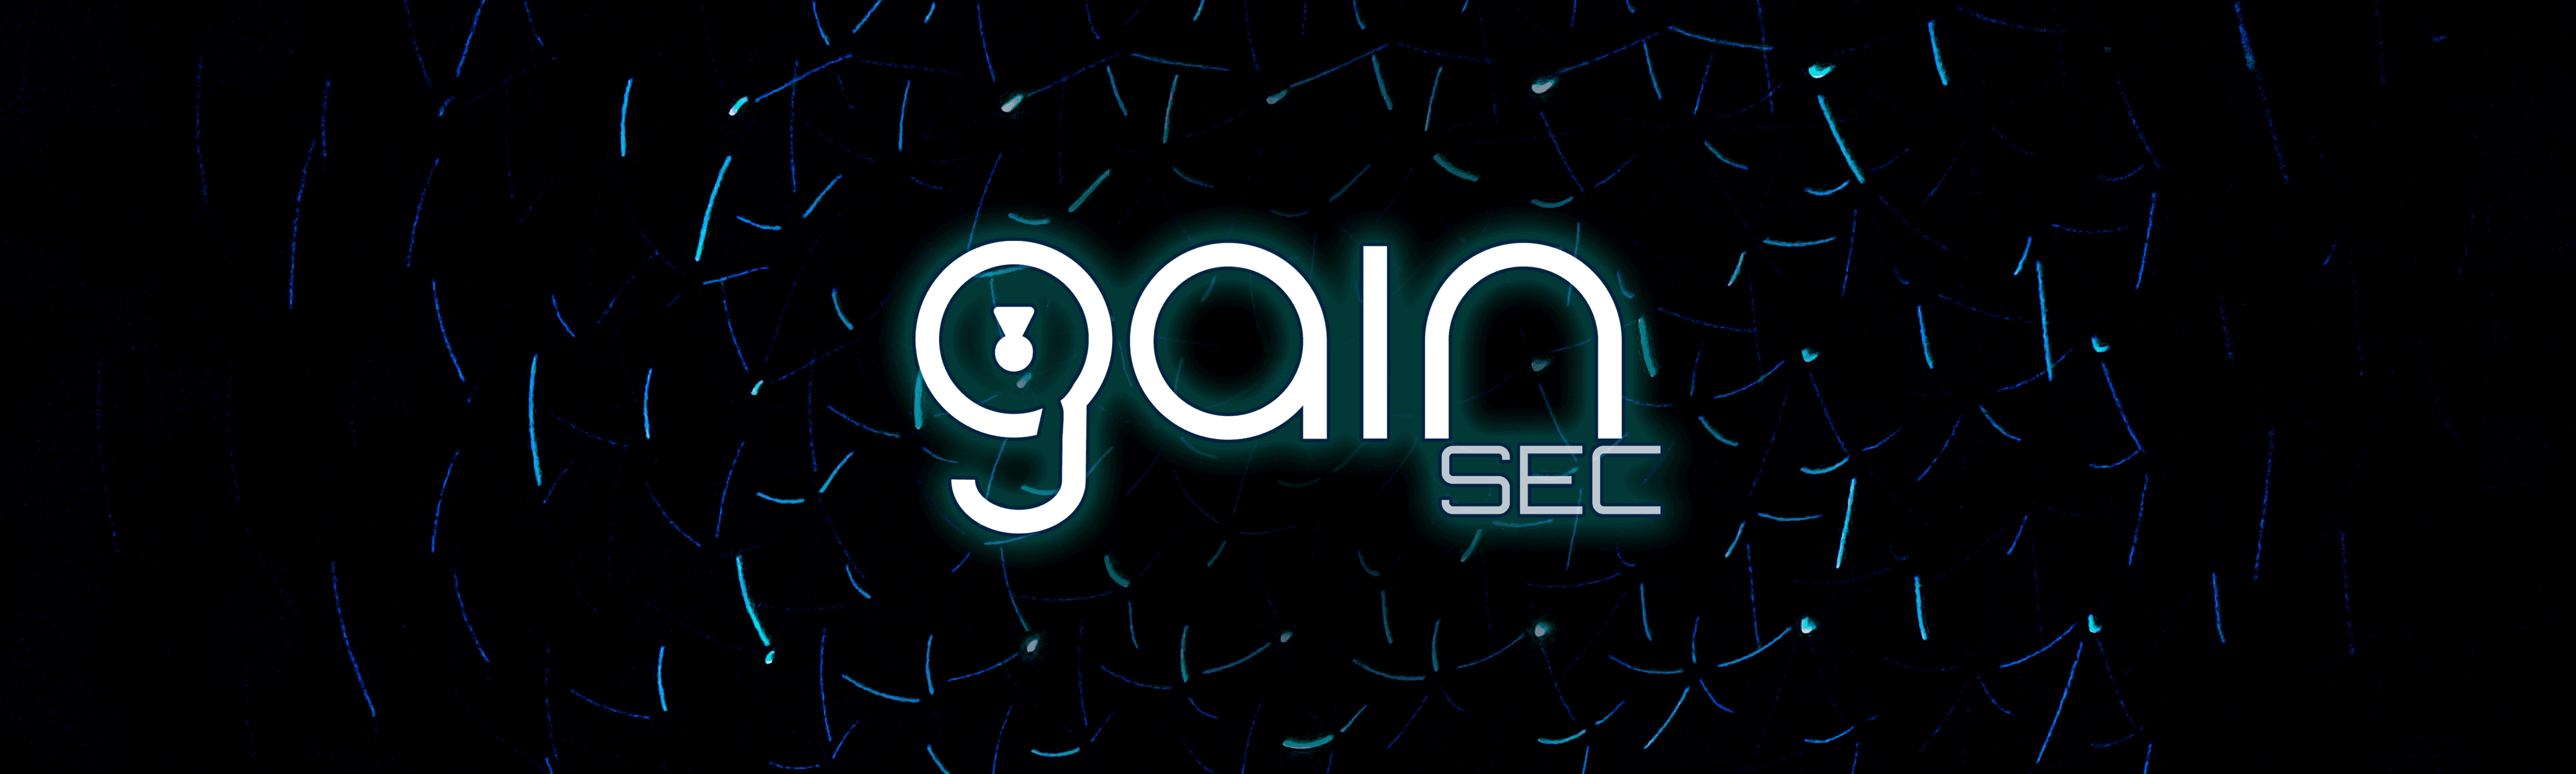 GainSec banner